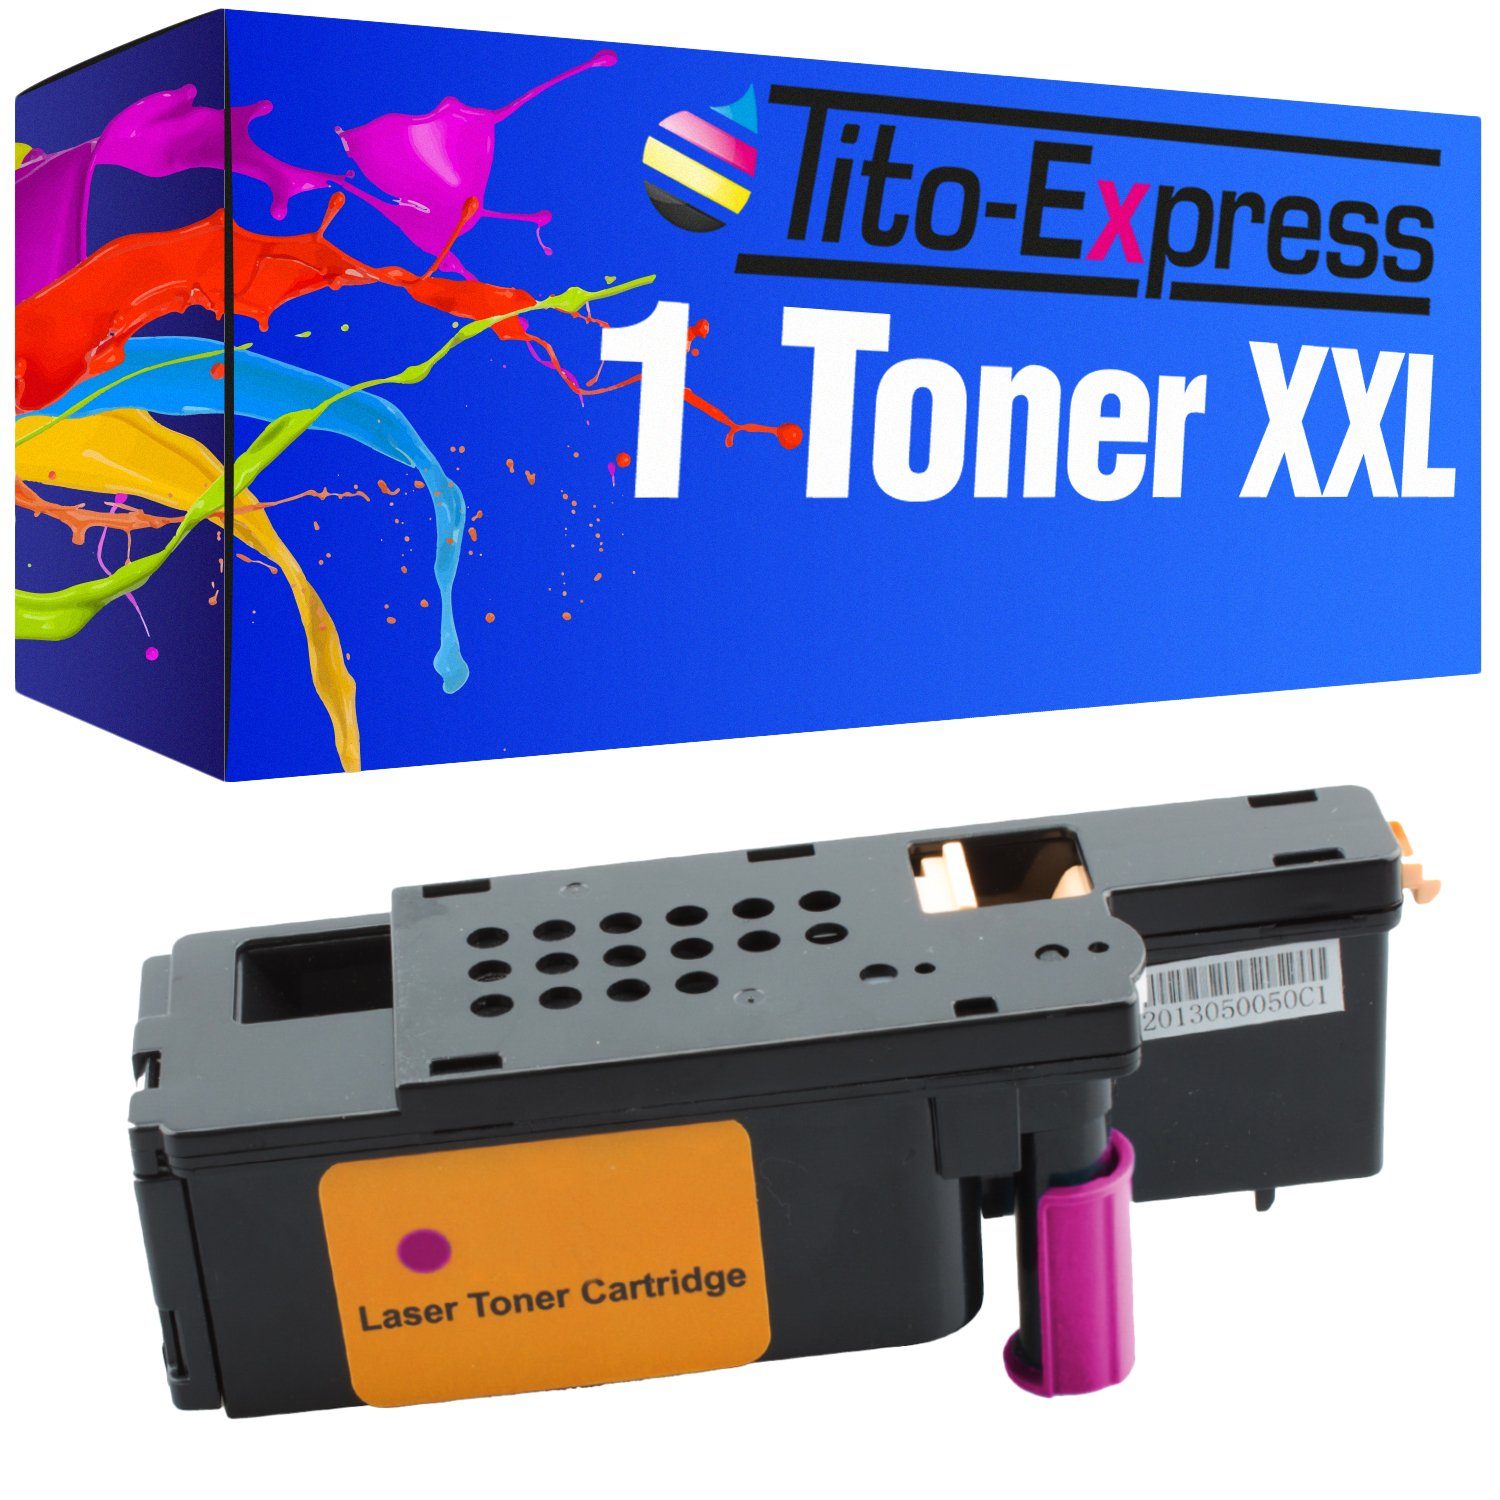 Tito-Express Tonerpatrone ersetzt Xerox 6000 Xerox-6000 Xerox6000 Magenta, für Phaser 6000 6010 N WorkCentre 6000 Series WC 6015 VB